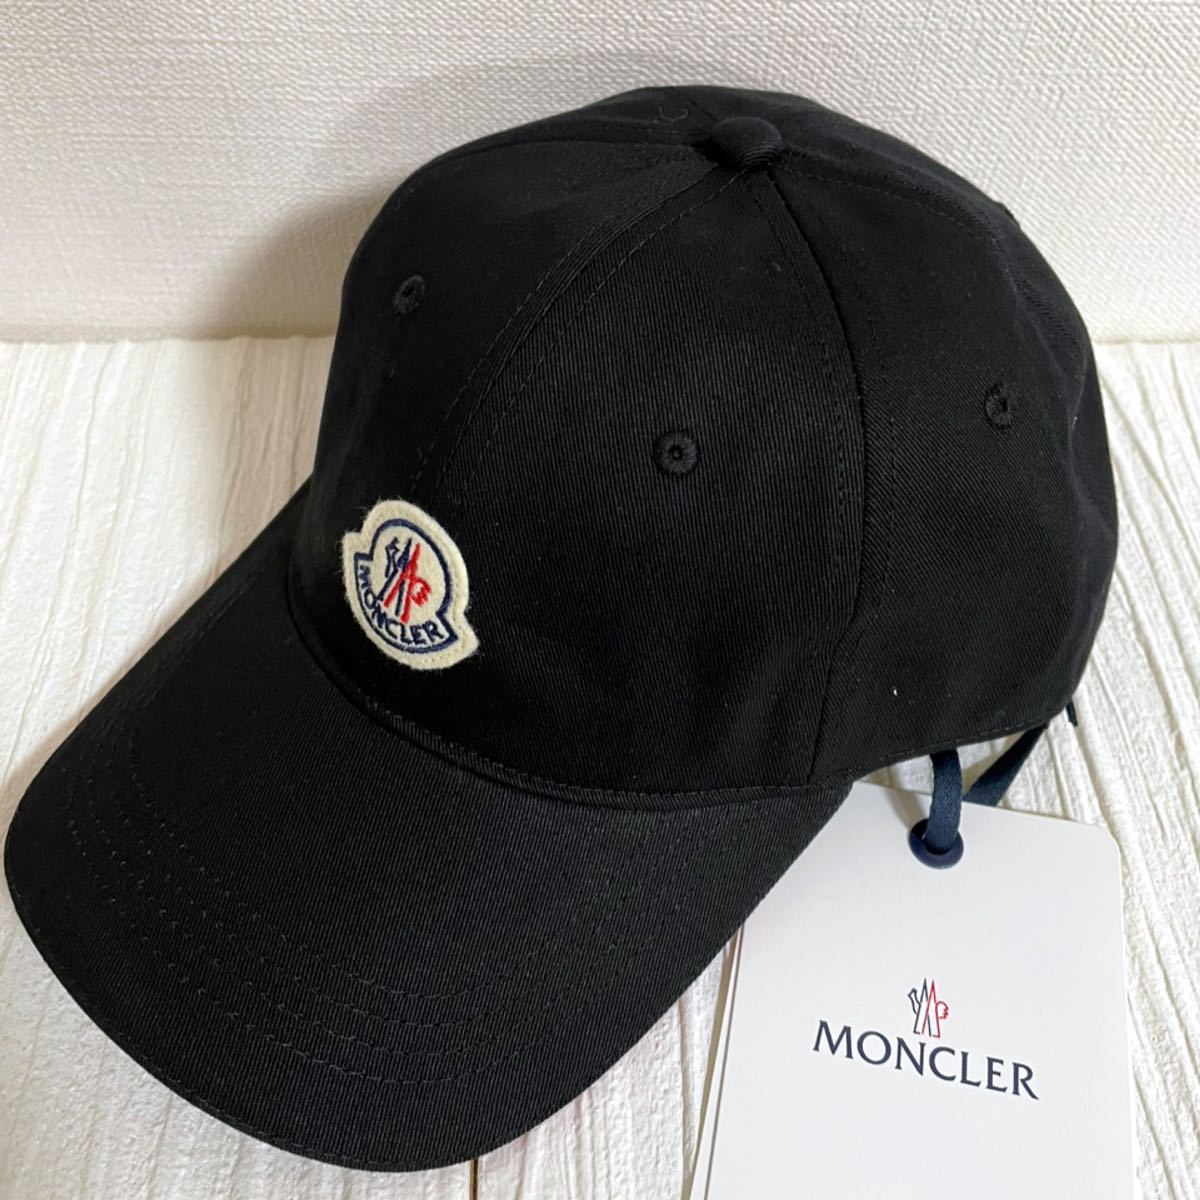 もらって嬉しい出産祝い モンクレール MONCLER ベースボールキャップ 帽子 野球帽 男女兼用 - キャップ - reachahand.org